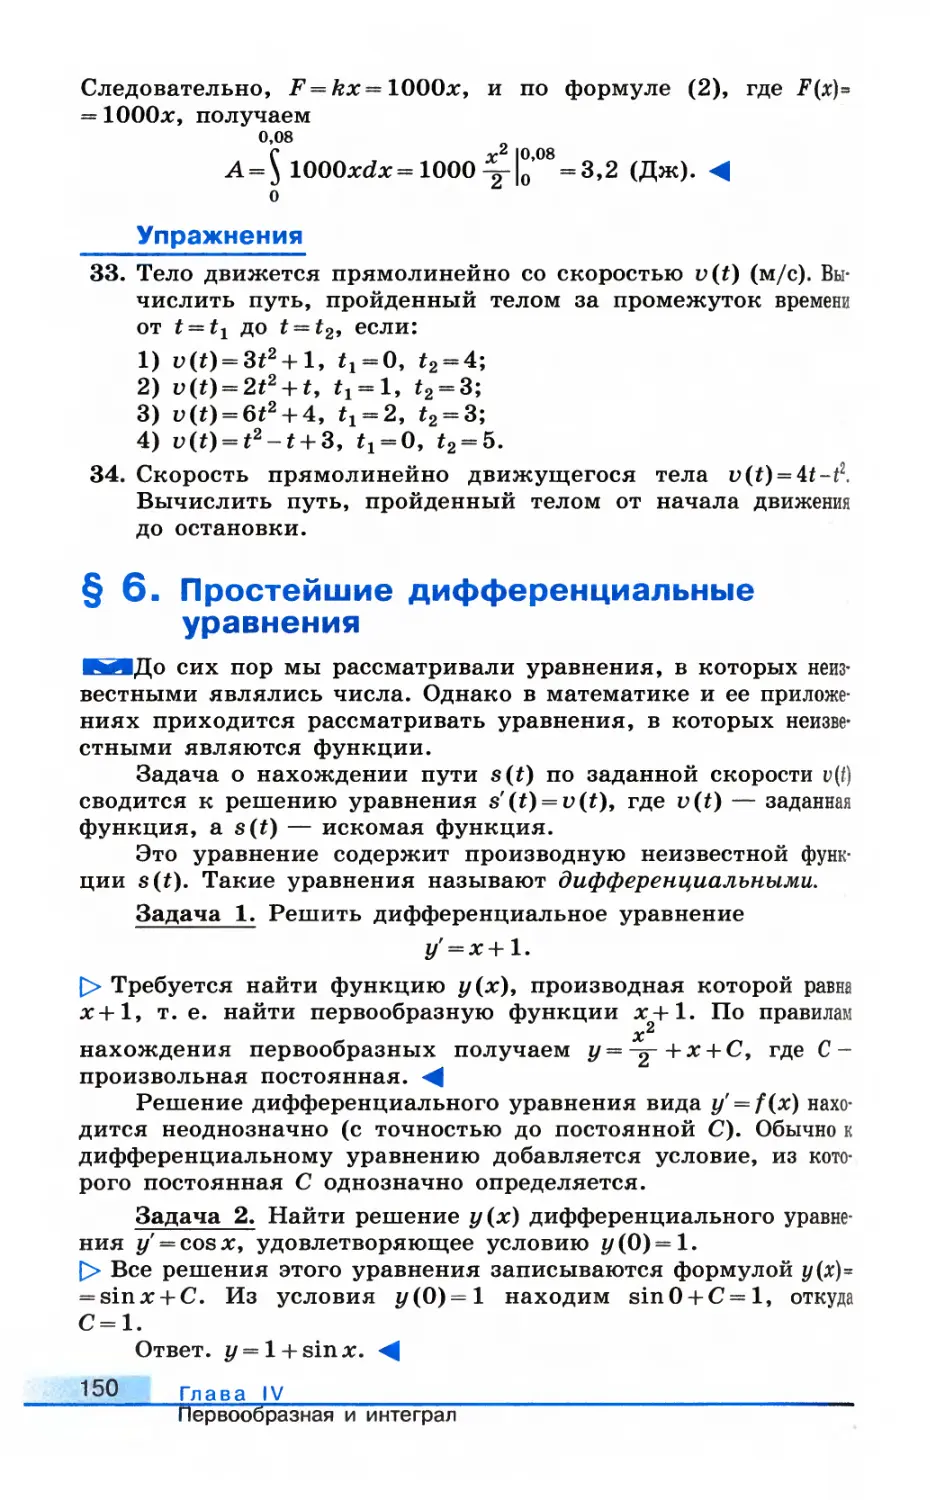 § 6. Простейшие дифференциальные уравнения